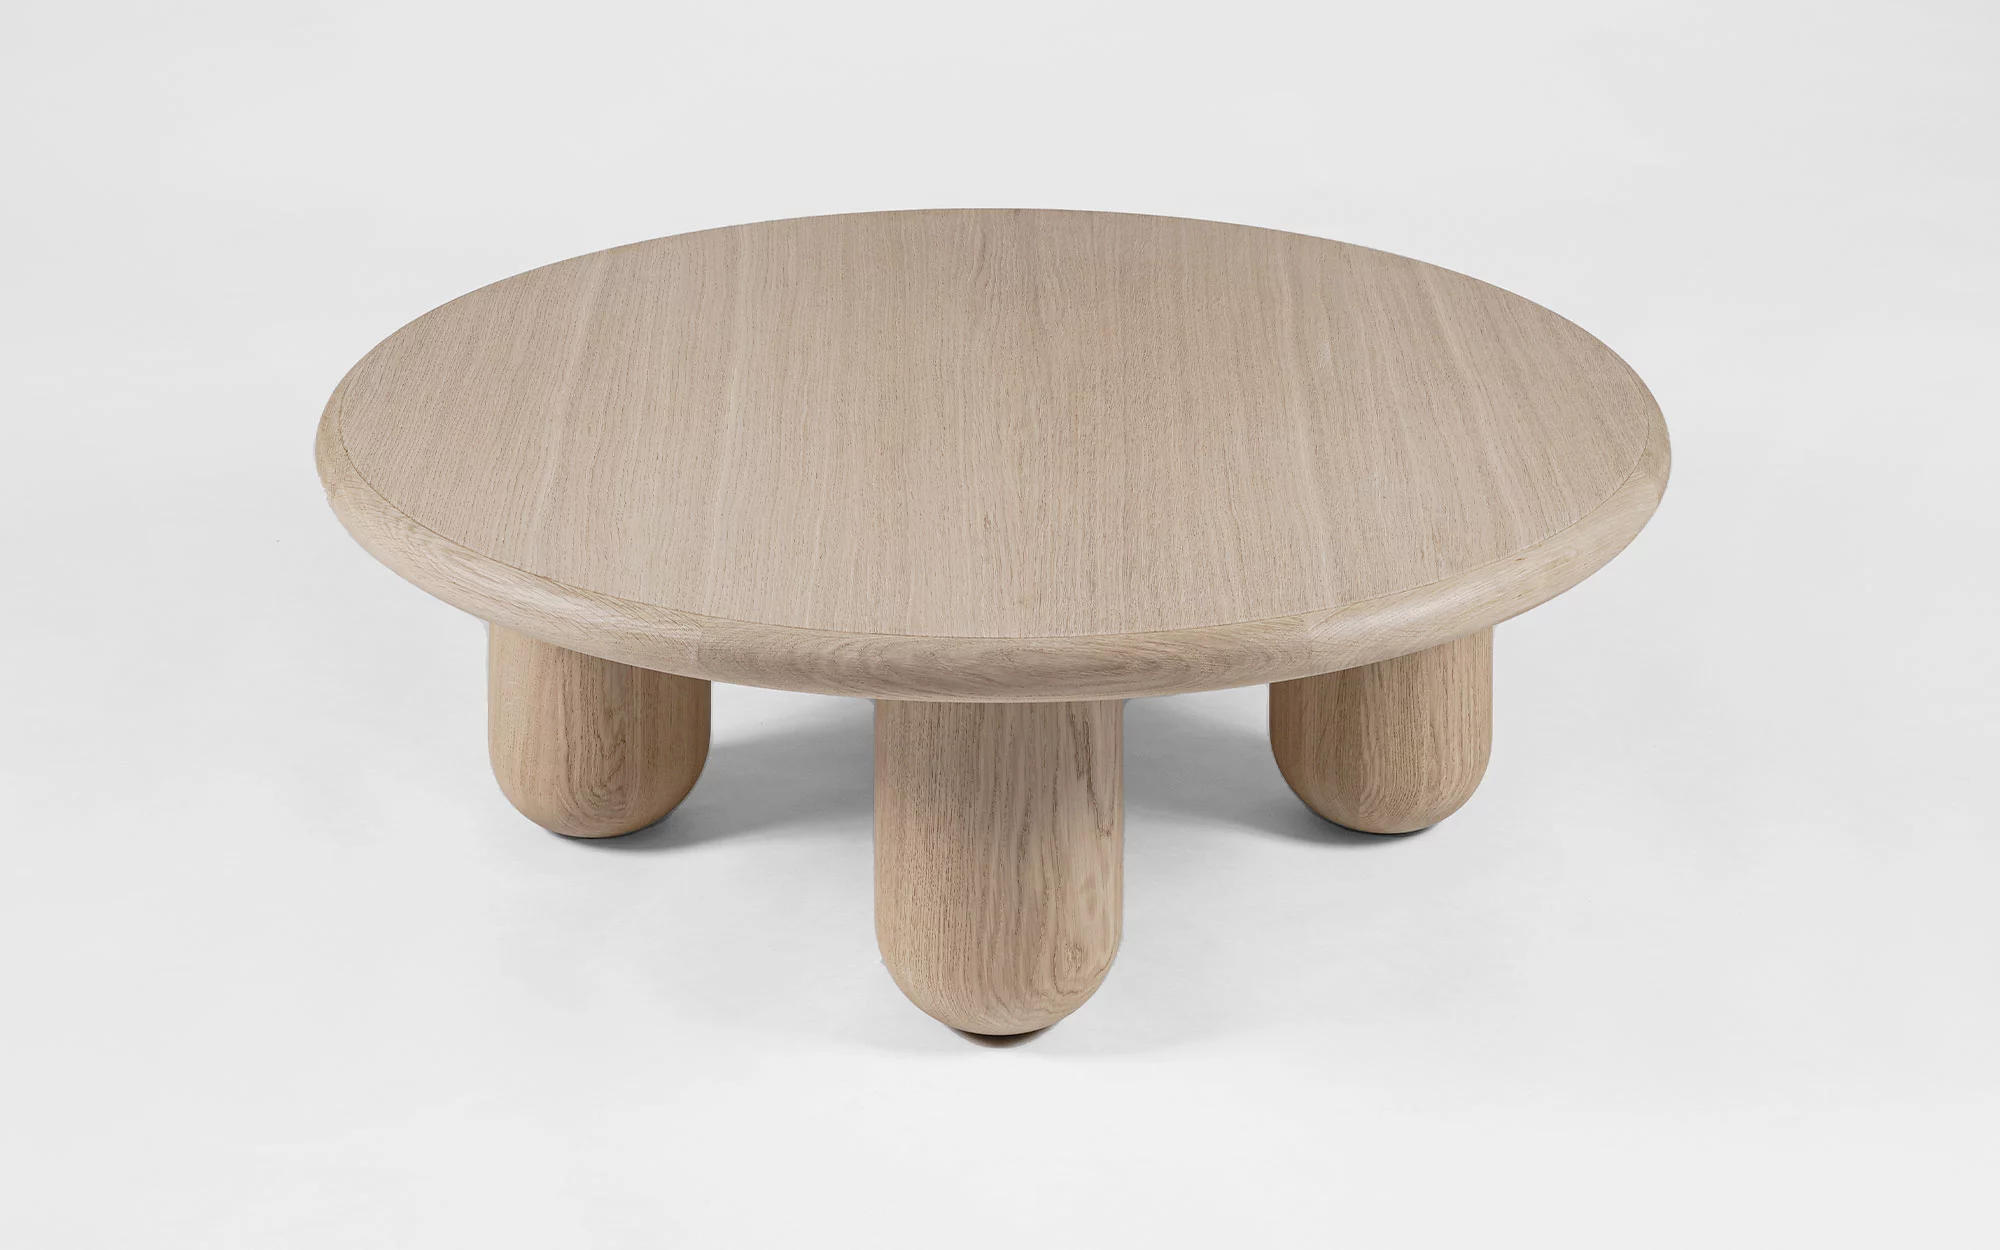 Organism coffee table - Jaime Hayon - Coffee table - Galerie kreo